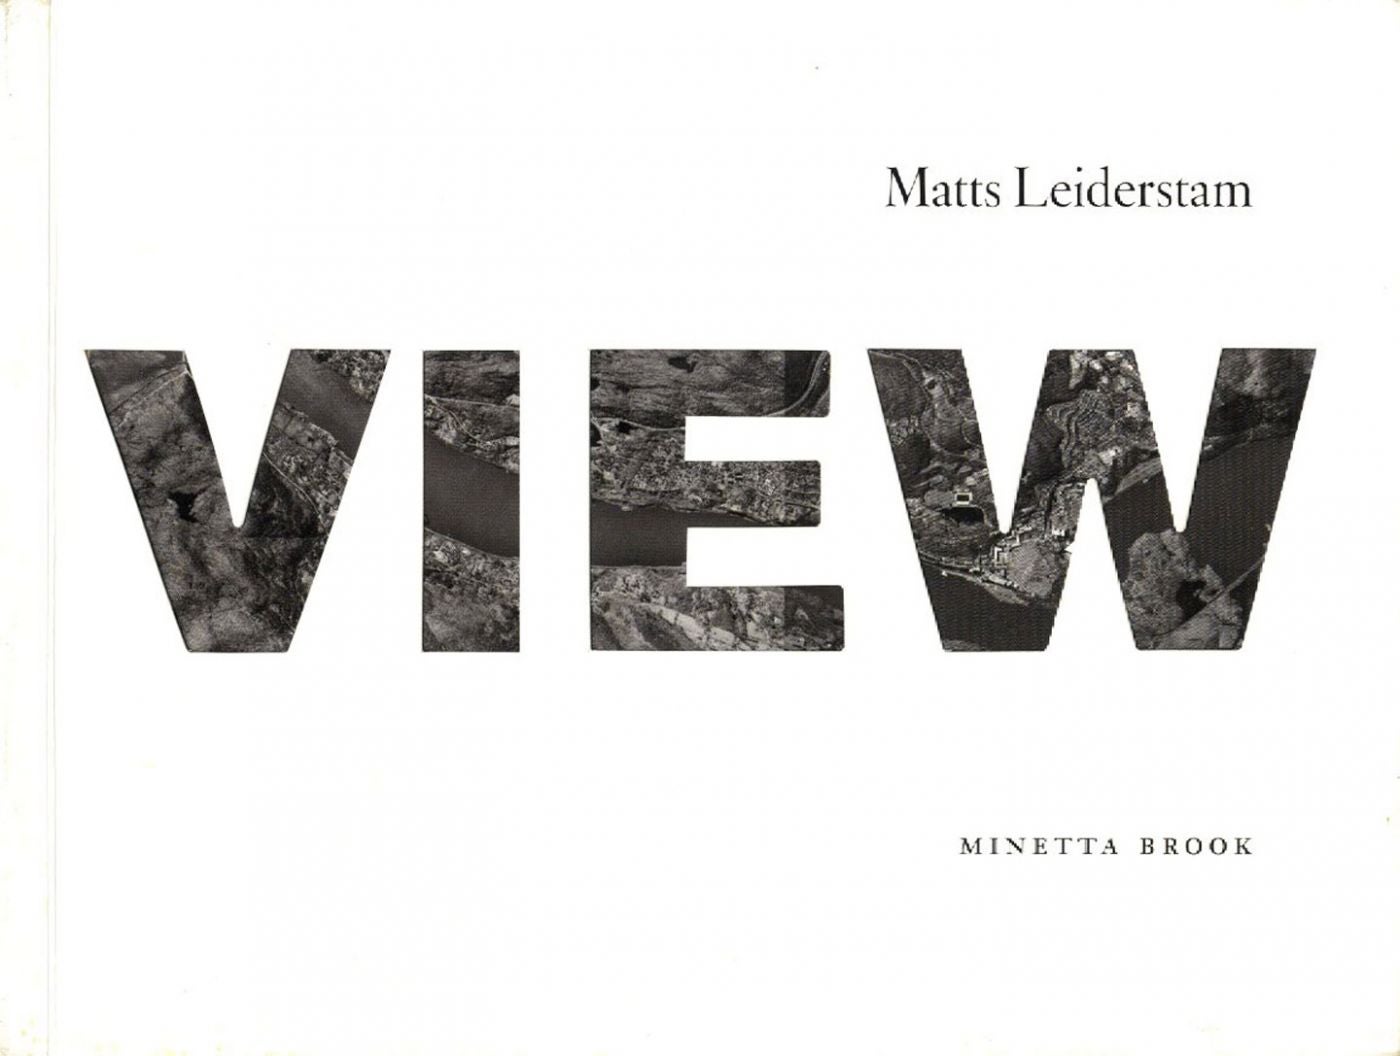 Matts Leiderstam: View